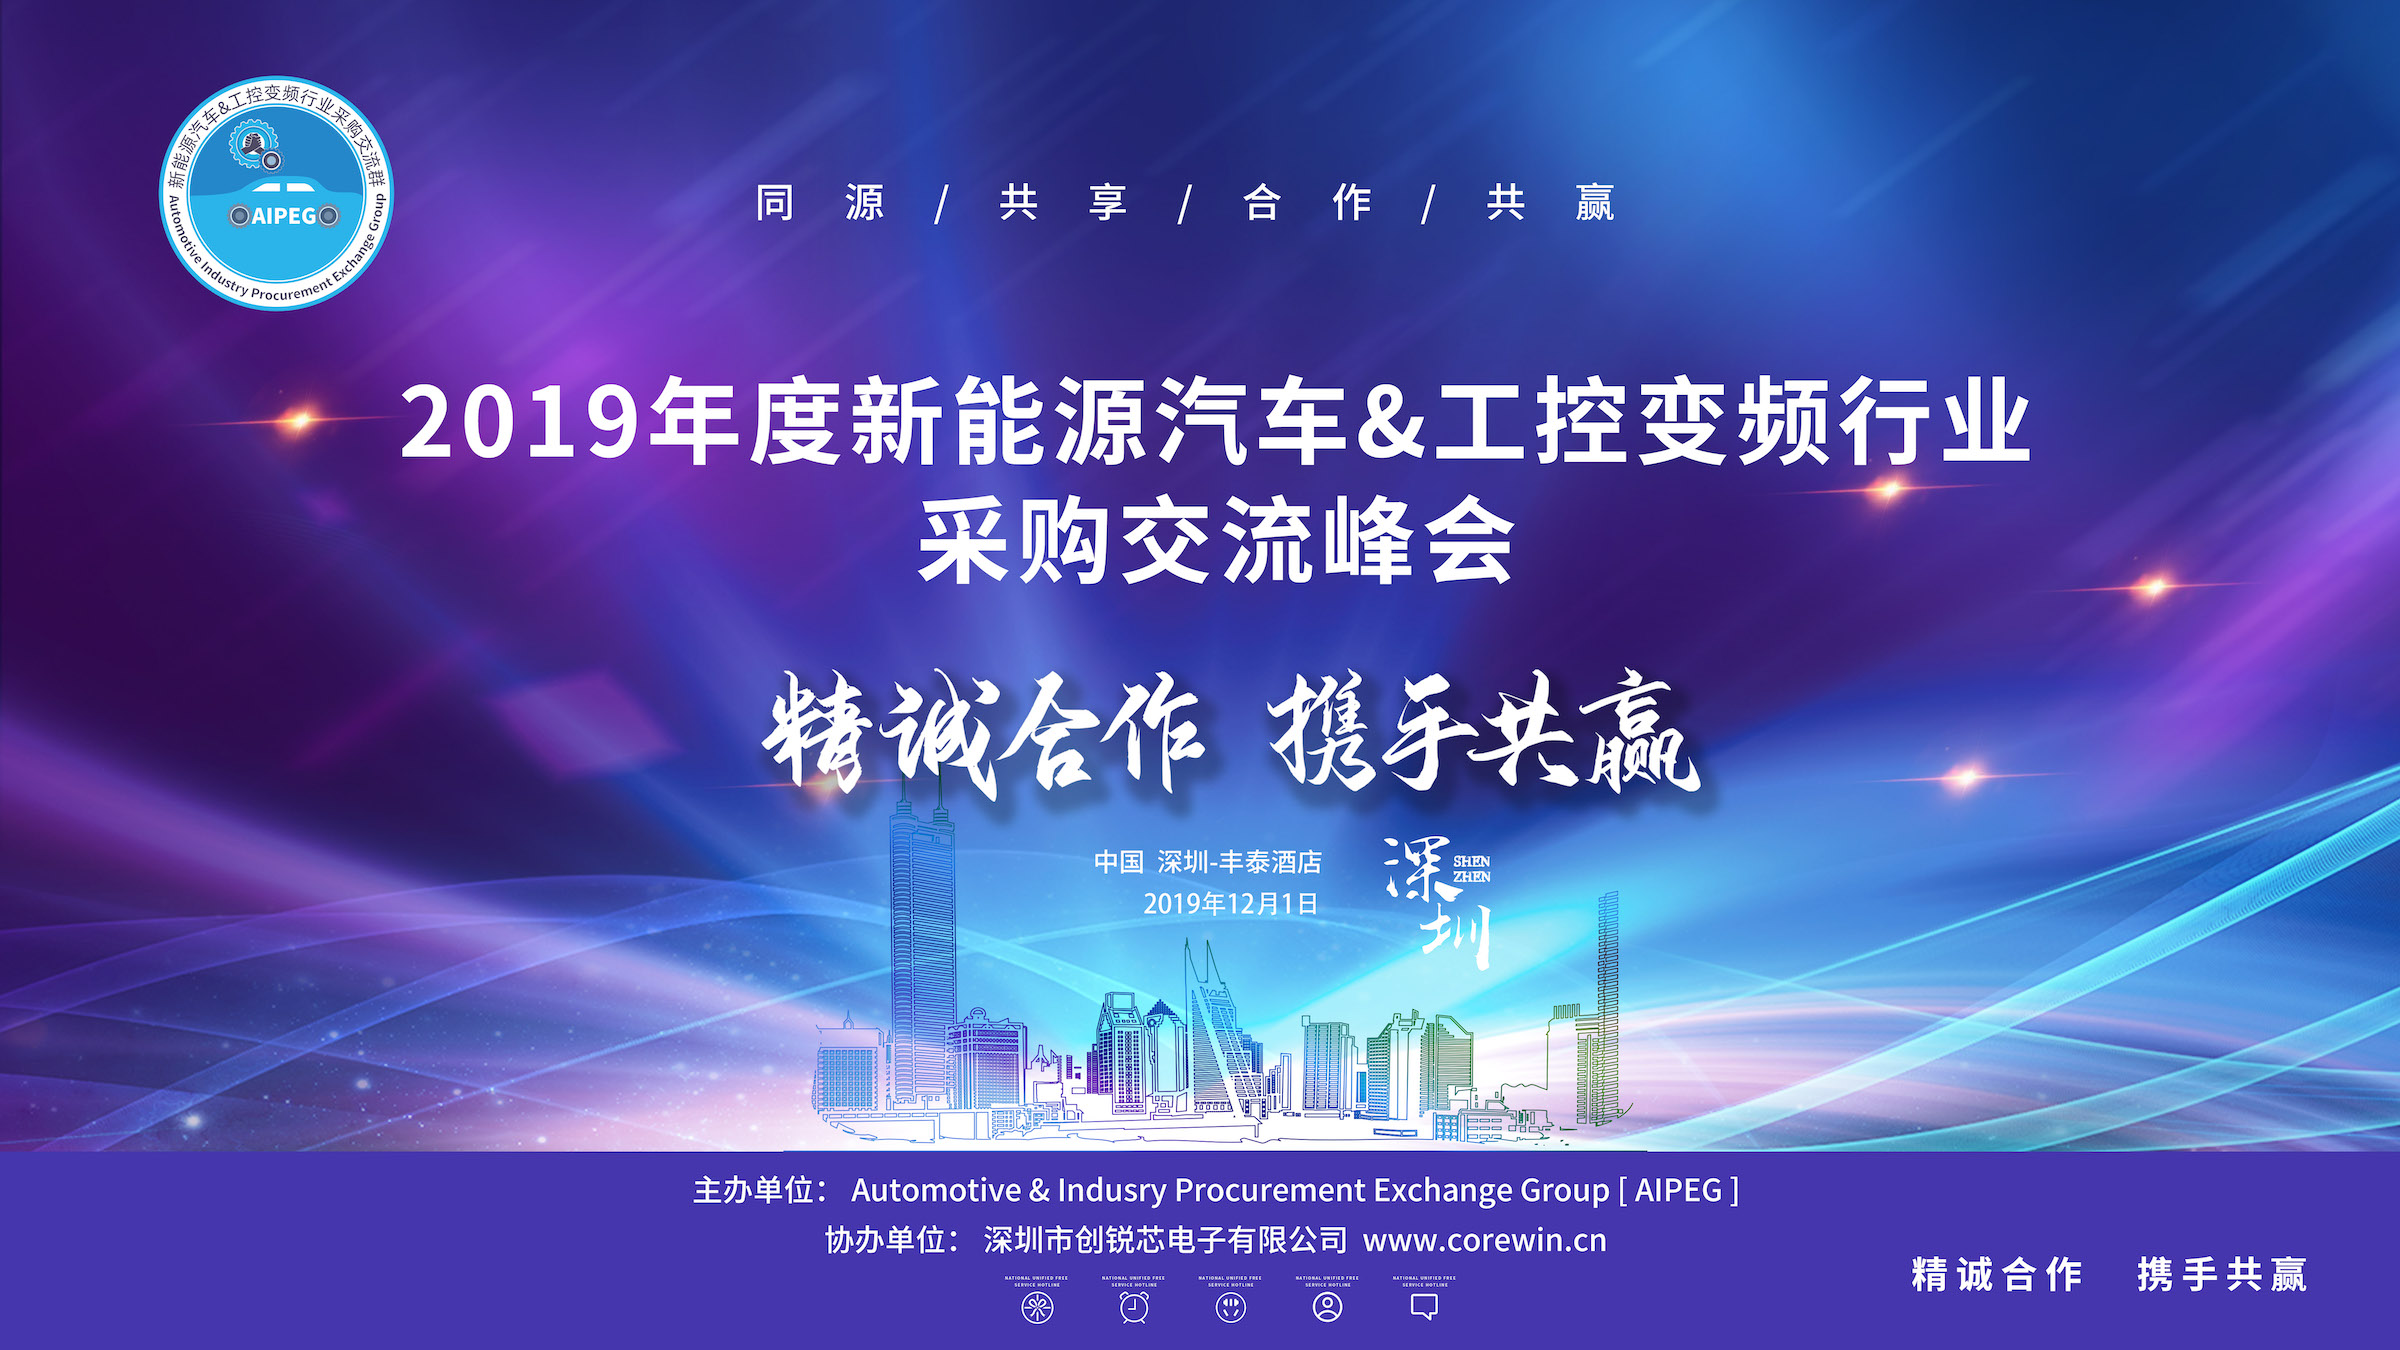 2019 年度新能源汽车№&工控变频行业采购交流峰→会(AIPEG)日前在深圳胜利召开。